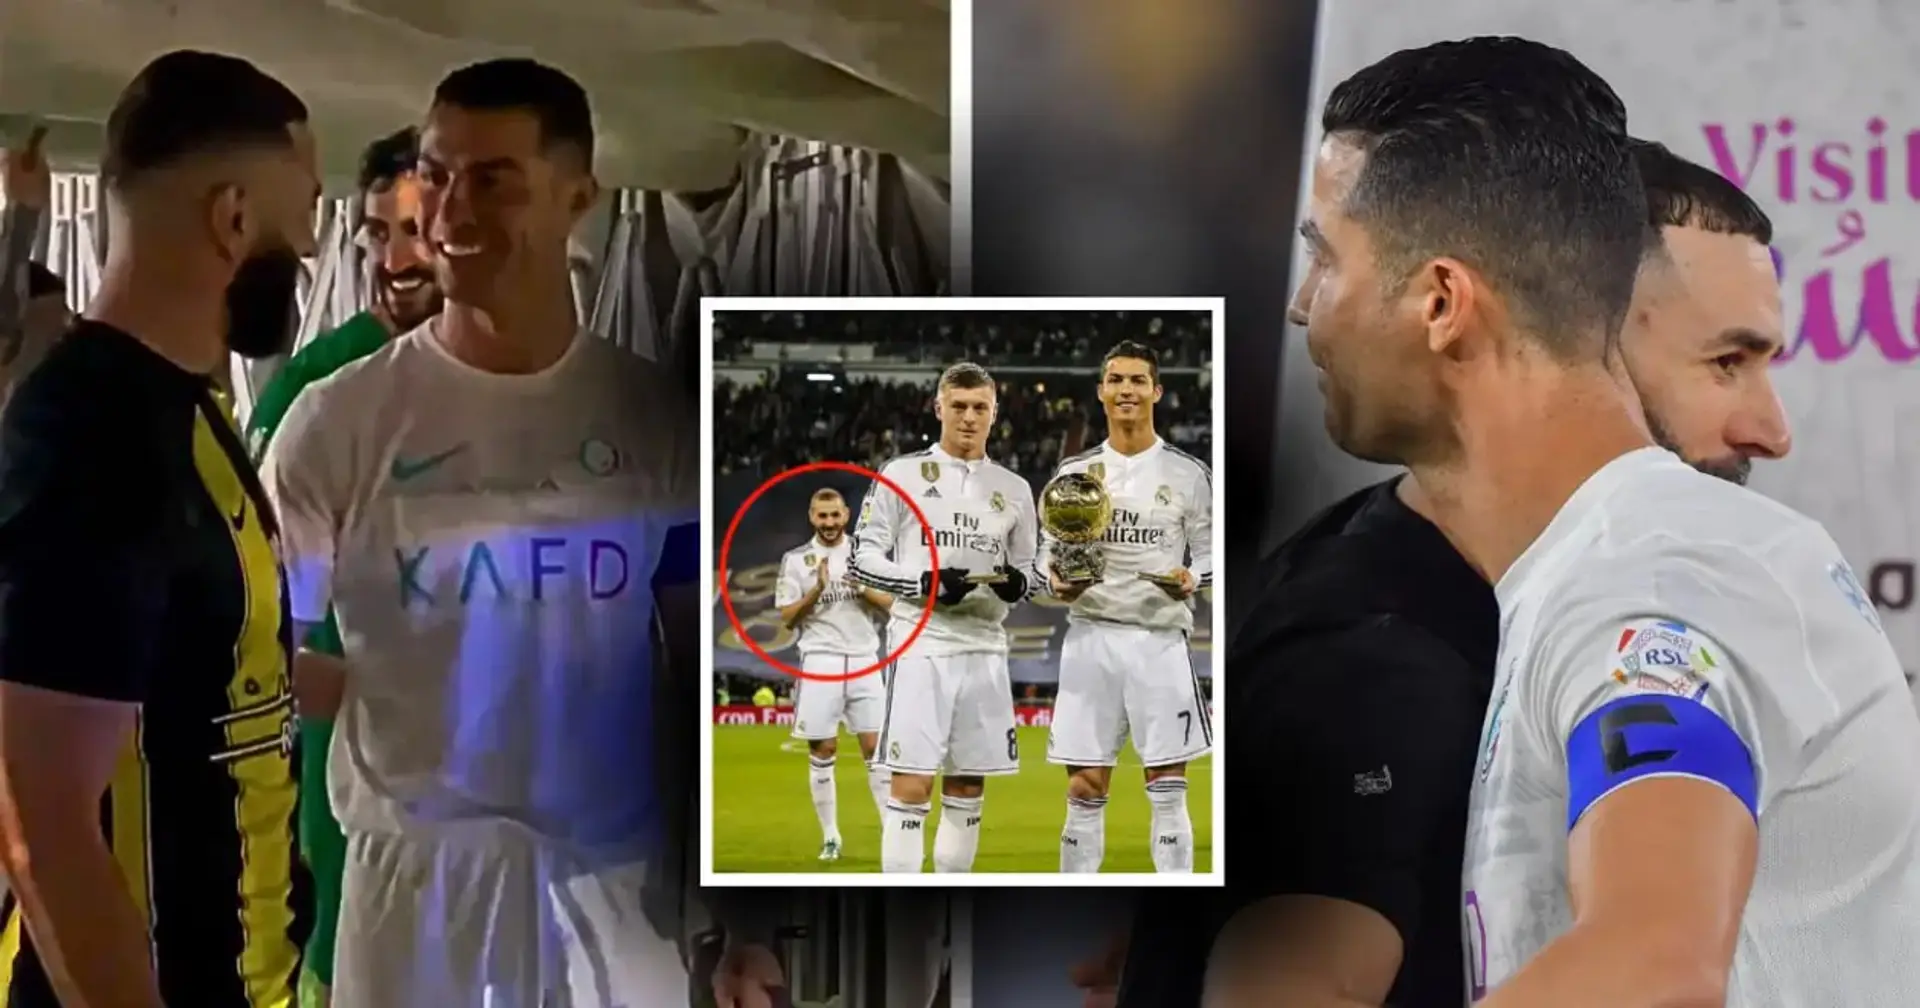 6 Jahre später: Ronaldo und Benzema treffen sich wieder - diesmal als Rivalen